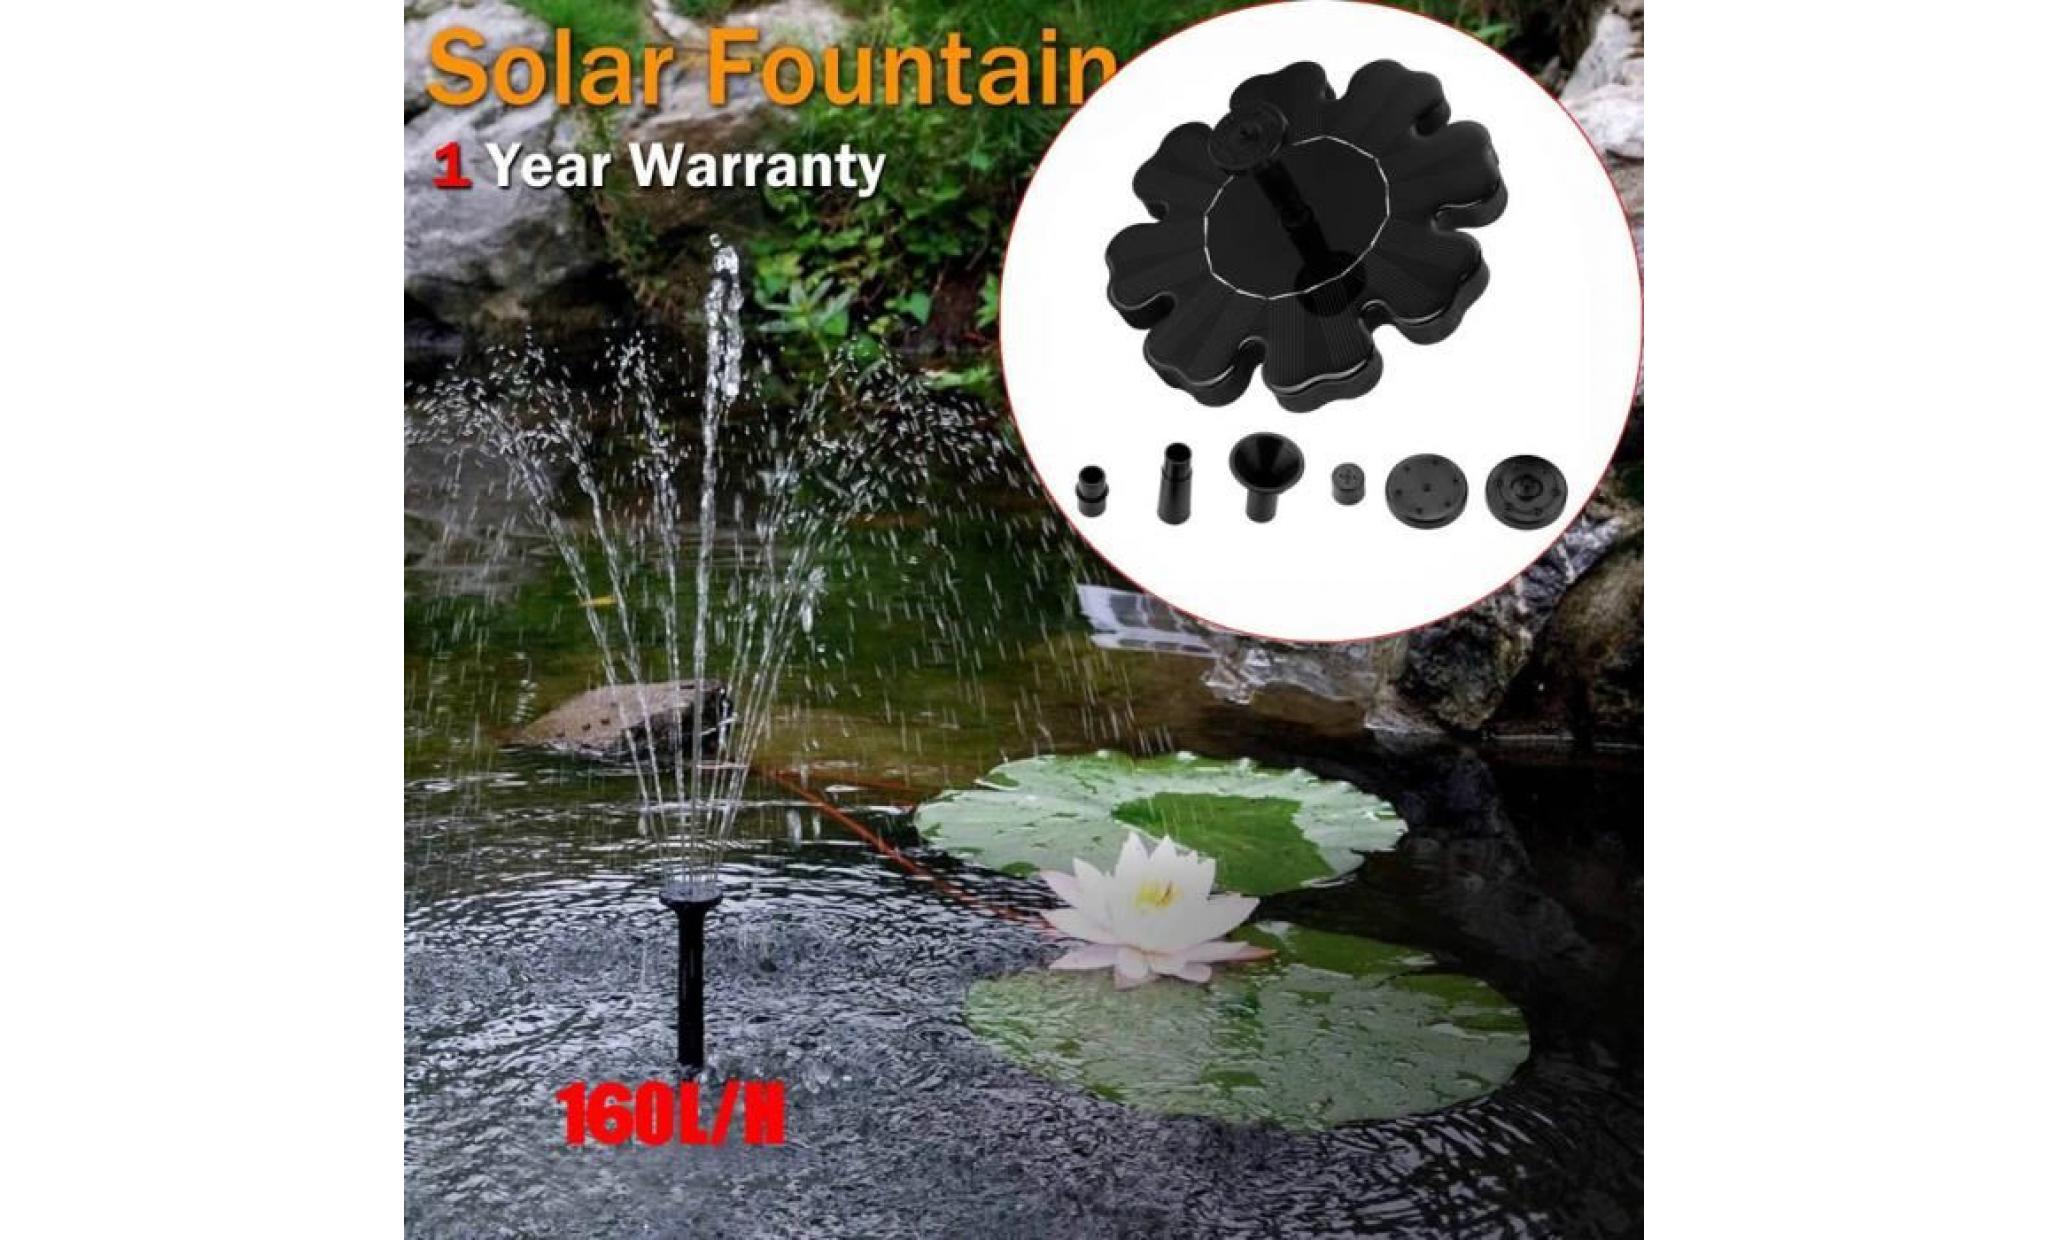 poi@ extérieur à énergie solaire oiseaux bain d'eau fontaine pompe pour piscine, jardin, aquarium noir_38